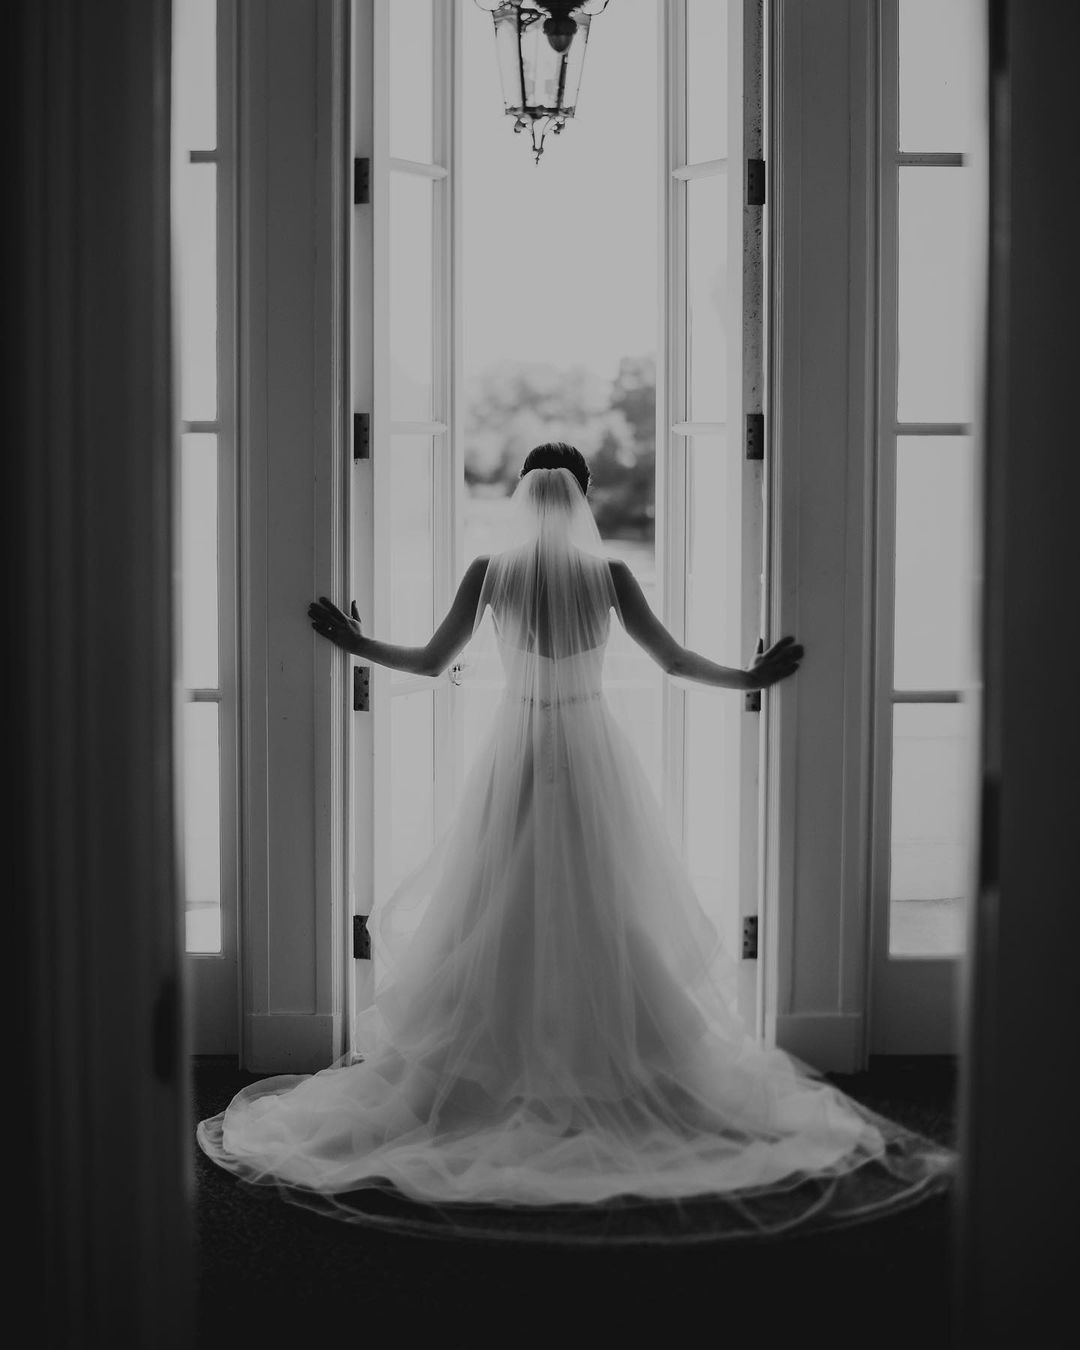 the backshot of a bride in her wedding dress opening a door